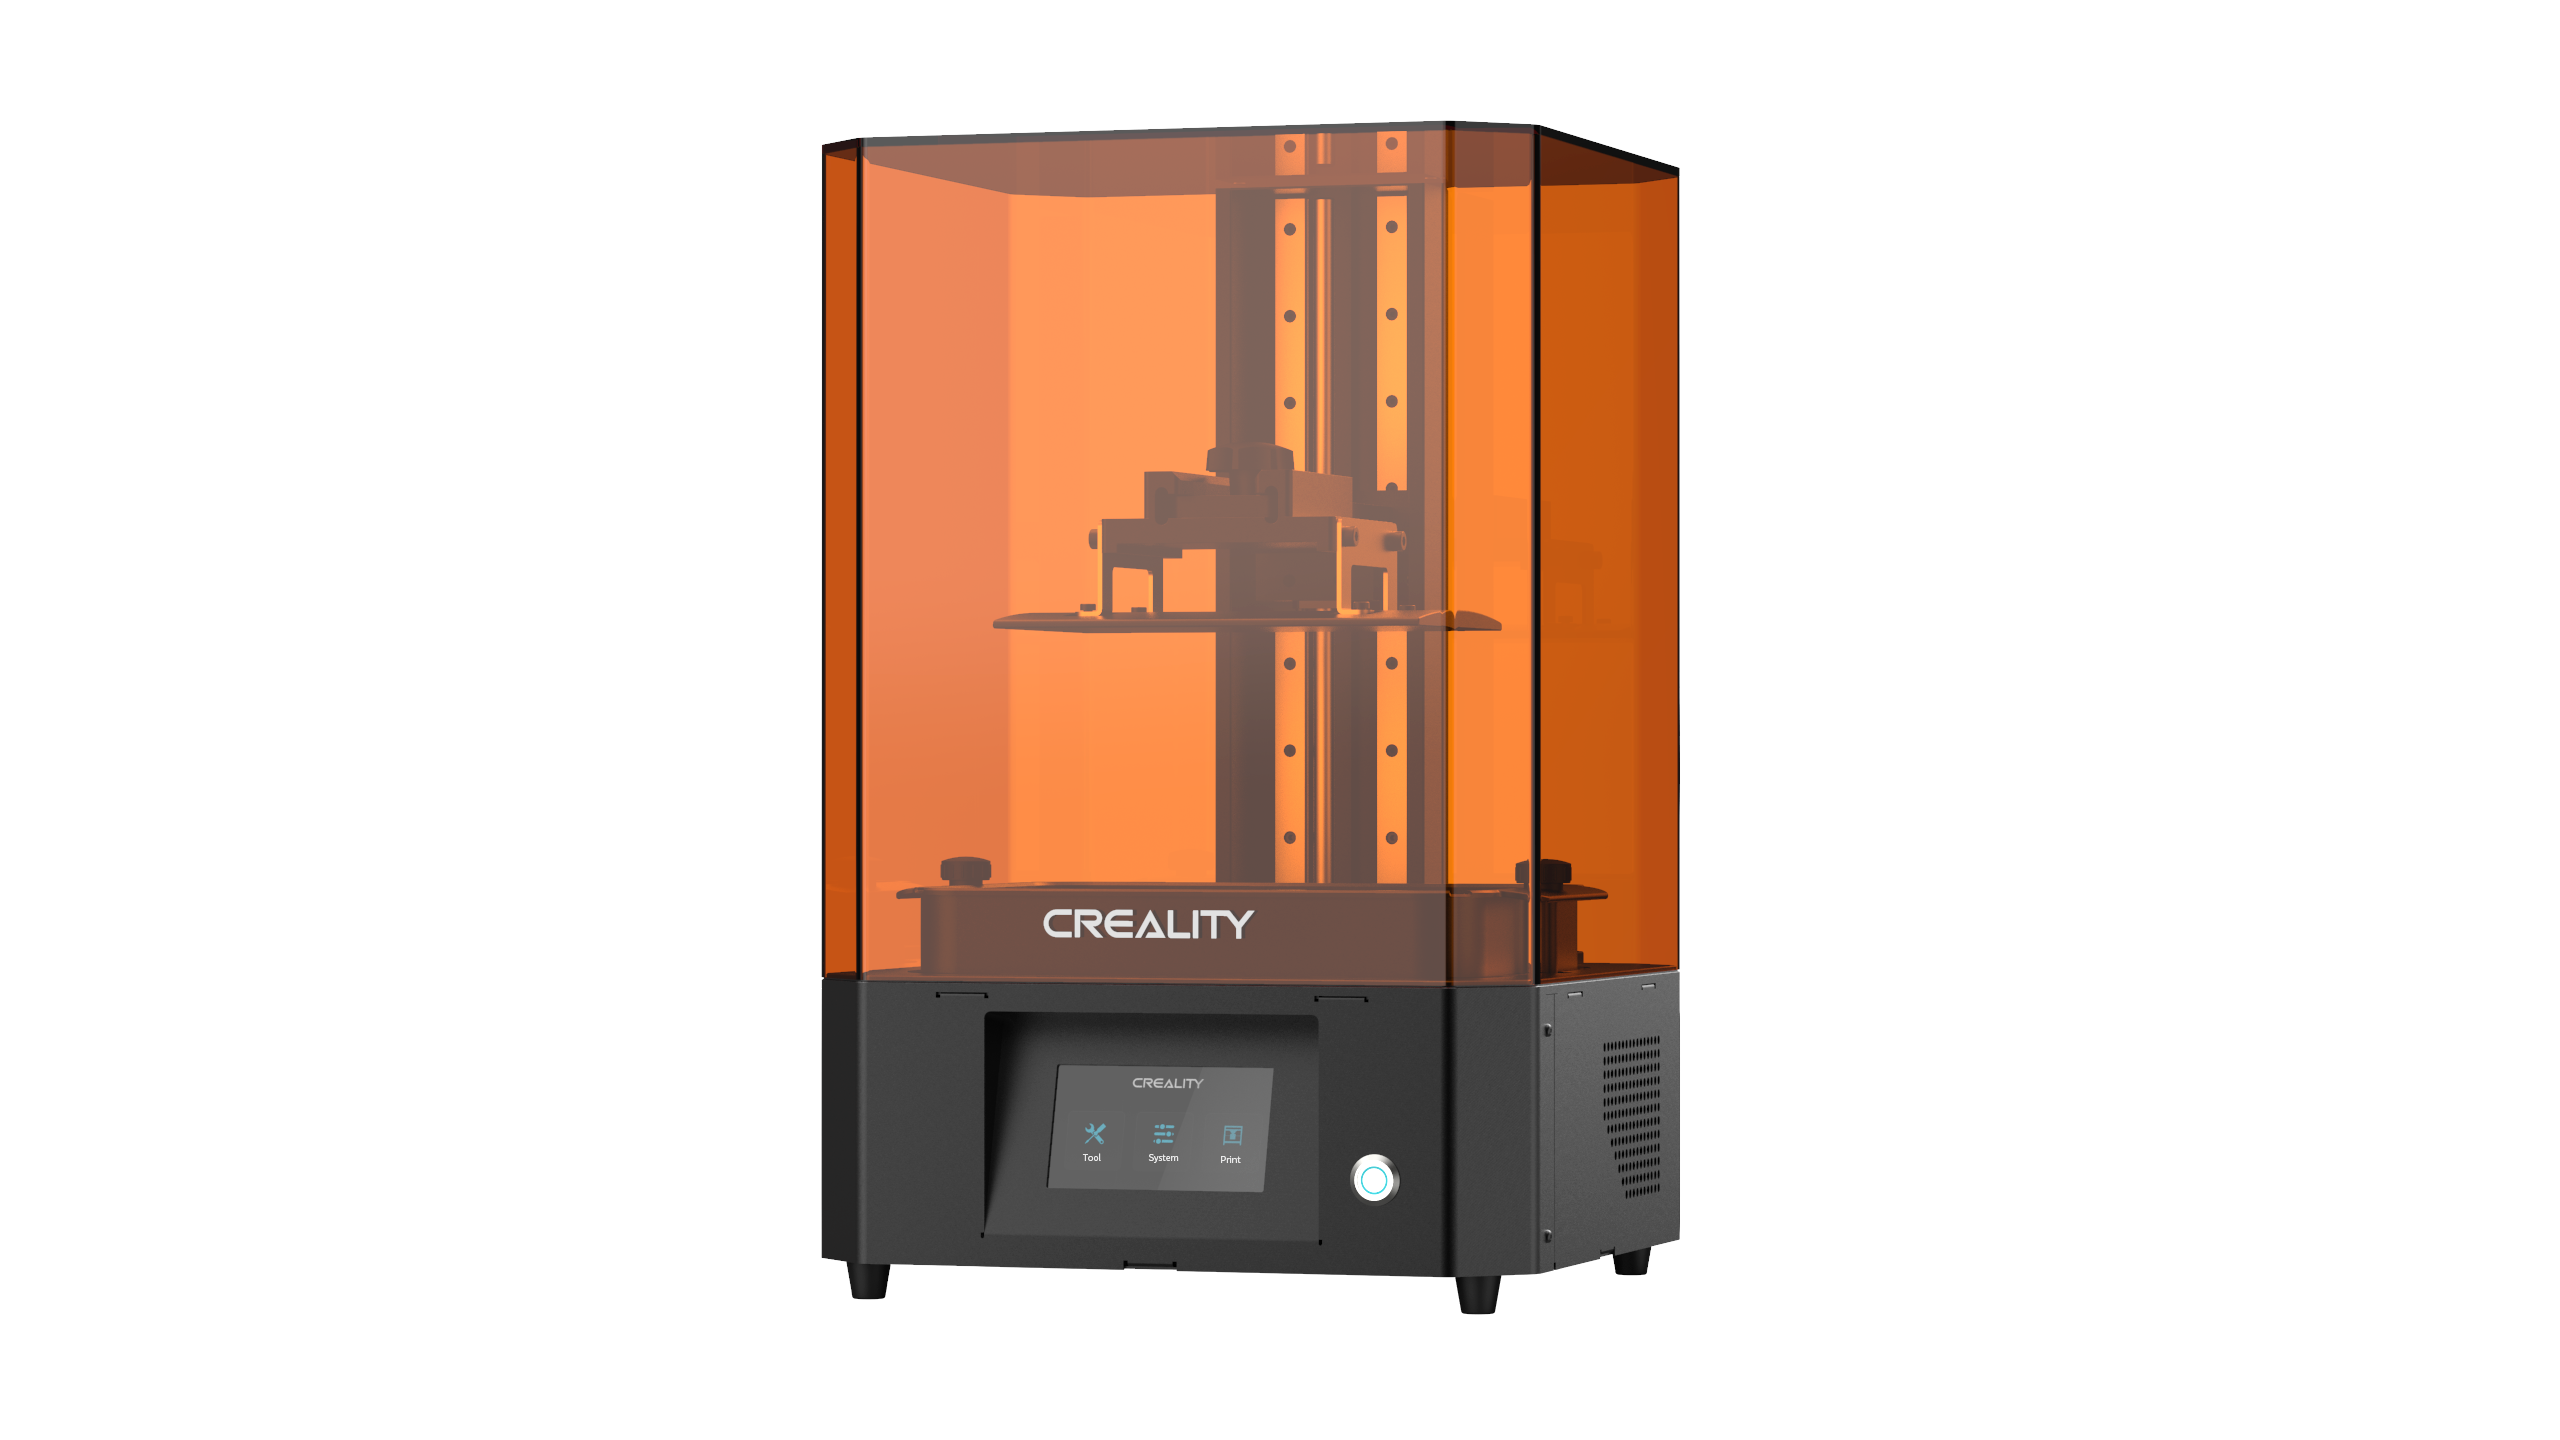 CREALITY LD-006 – MONO LCD RESIN 3D PRINTER